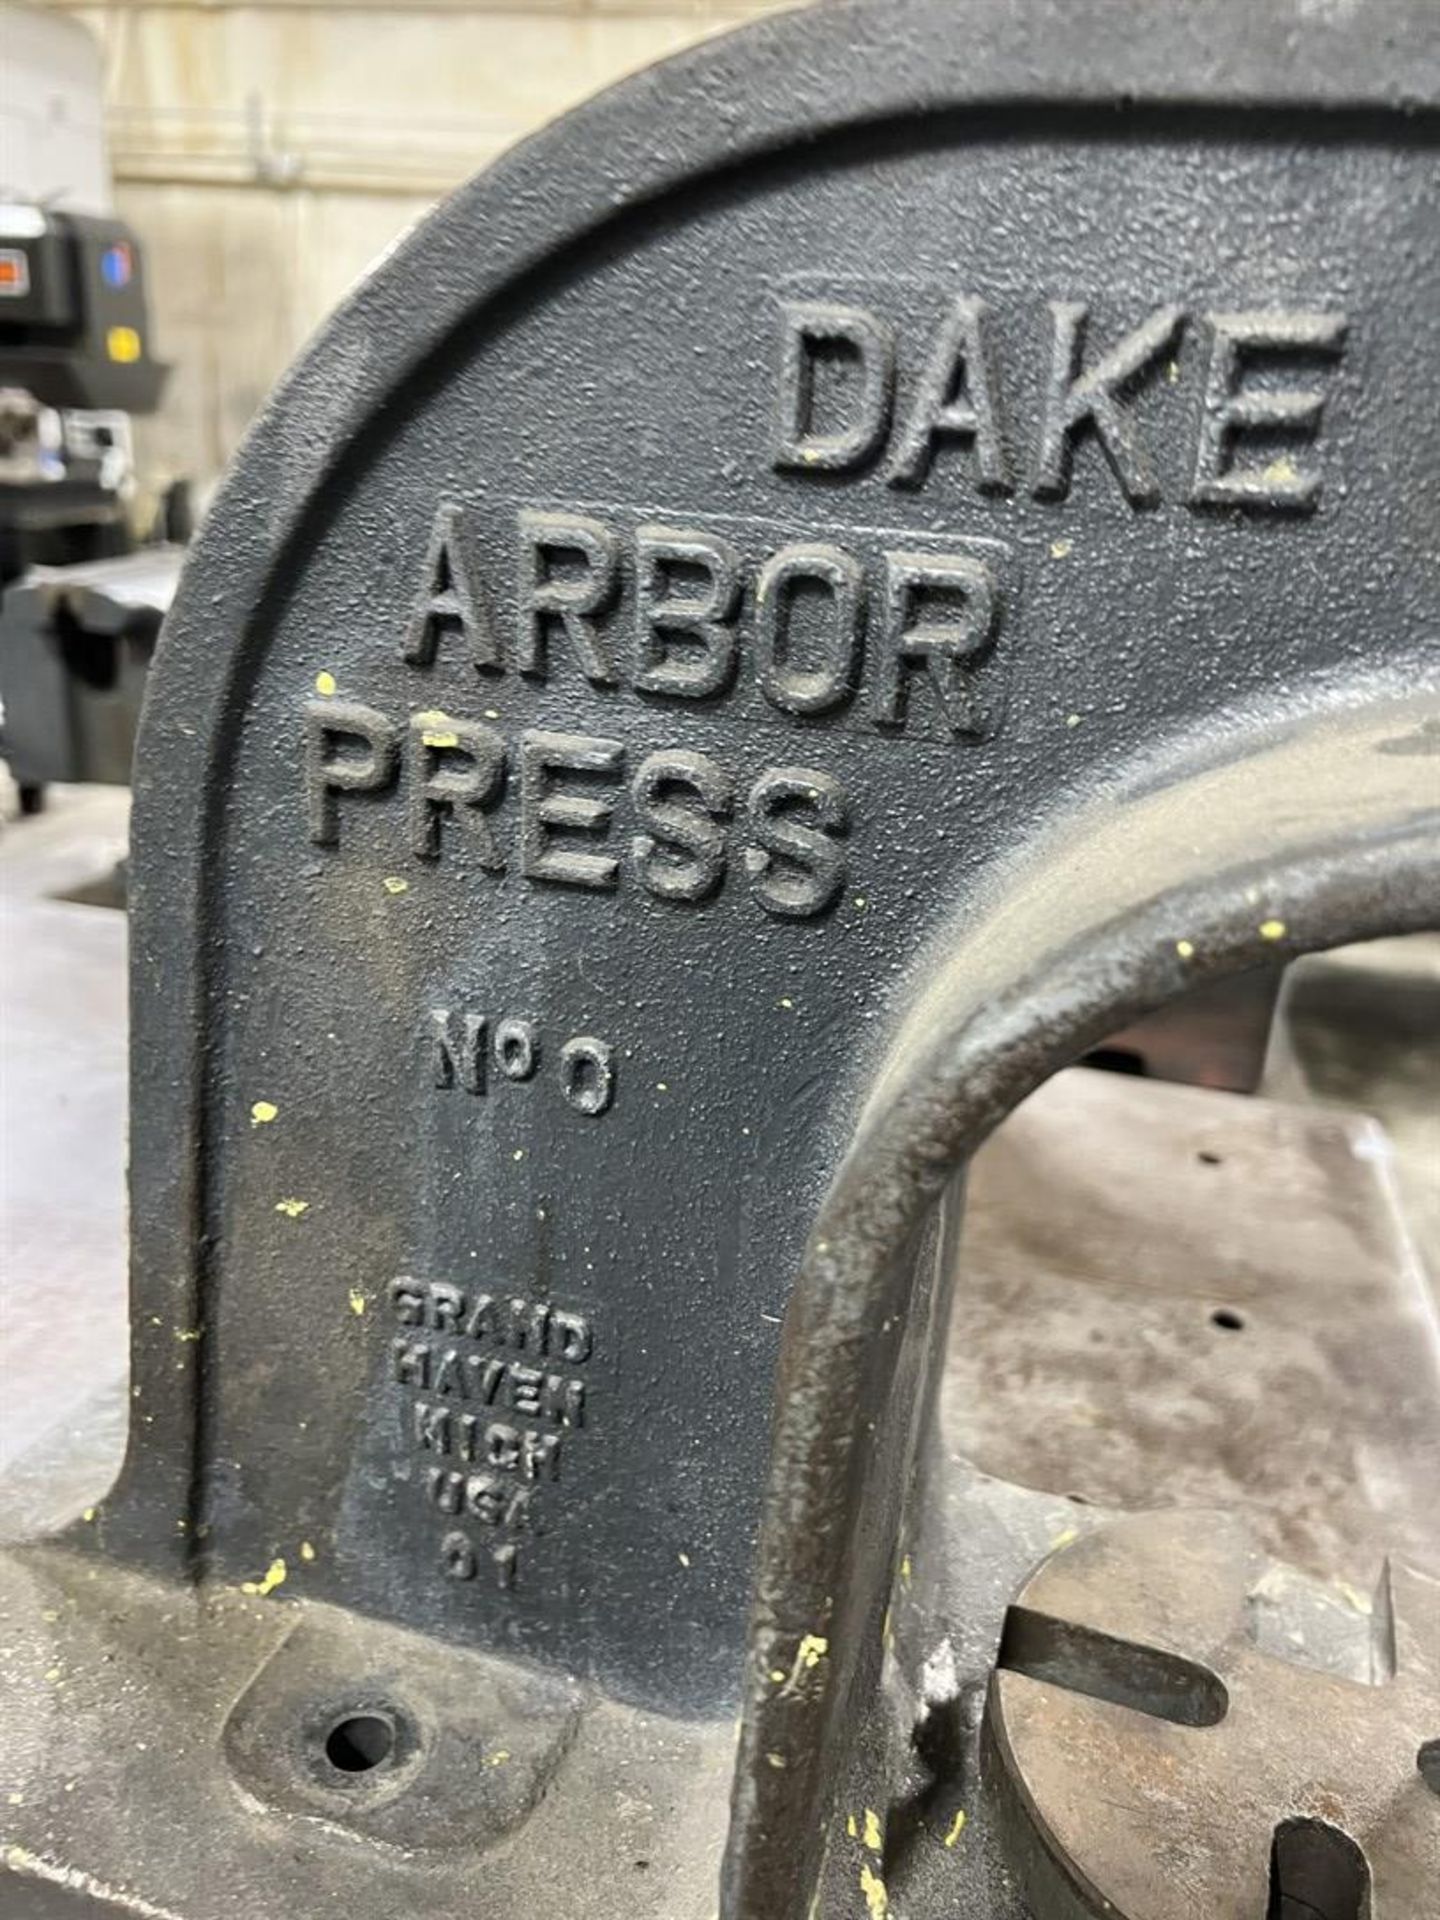 DAKE No. 0 Bench Top Arbor Press - Image 3 of 3